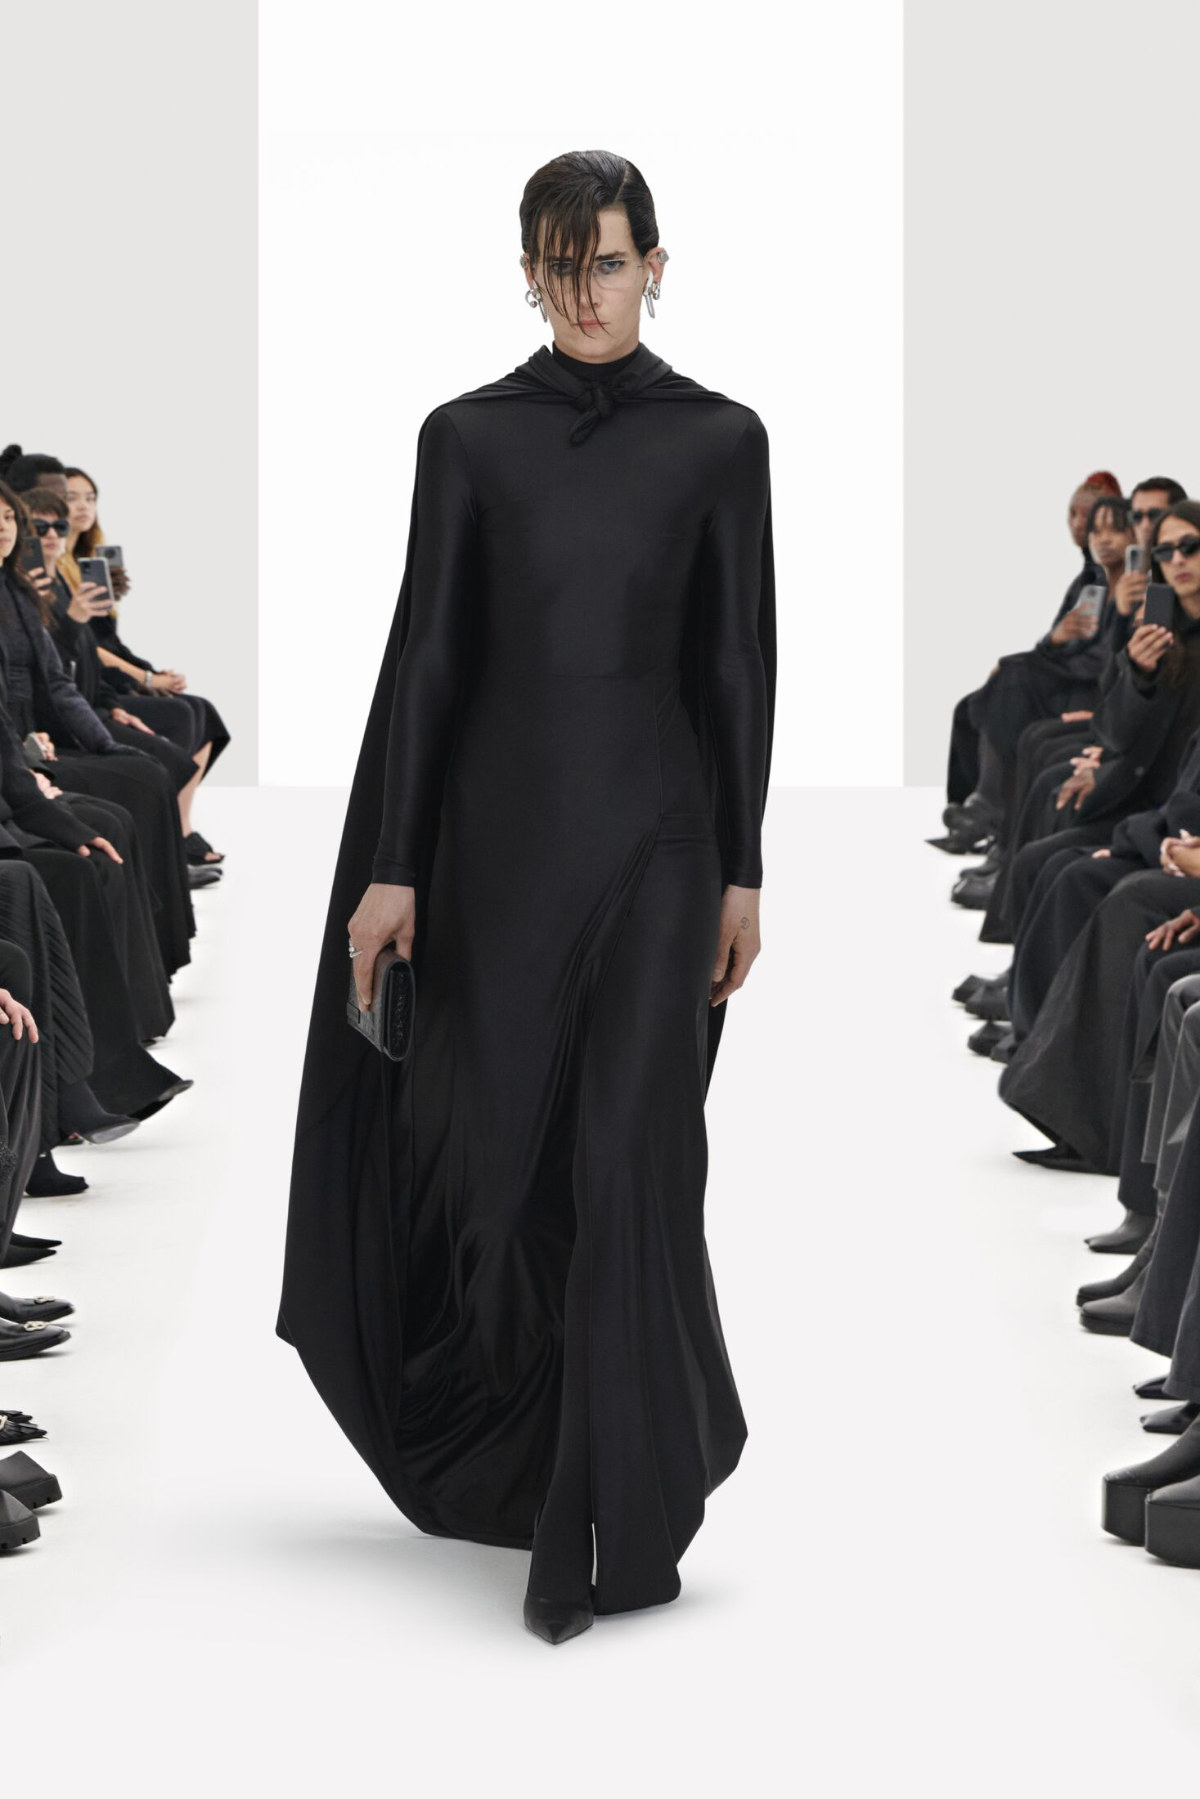 Balenciaga Presents Its New Spring 2022 Collection